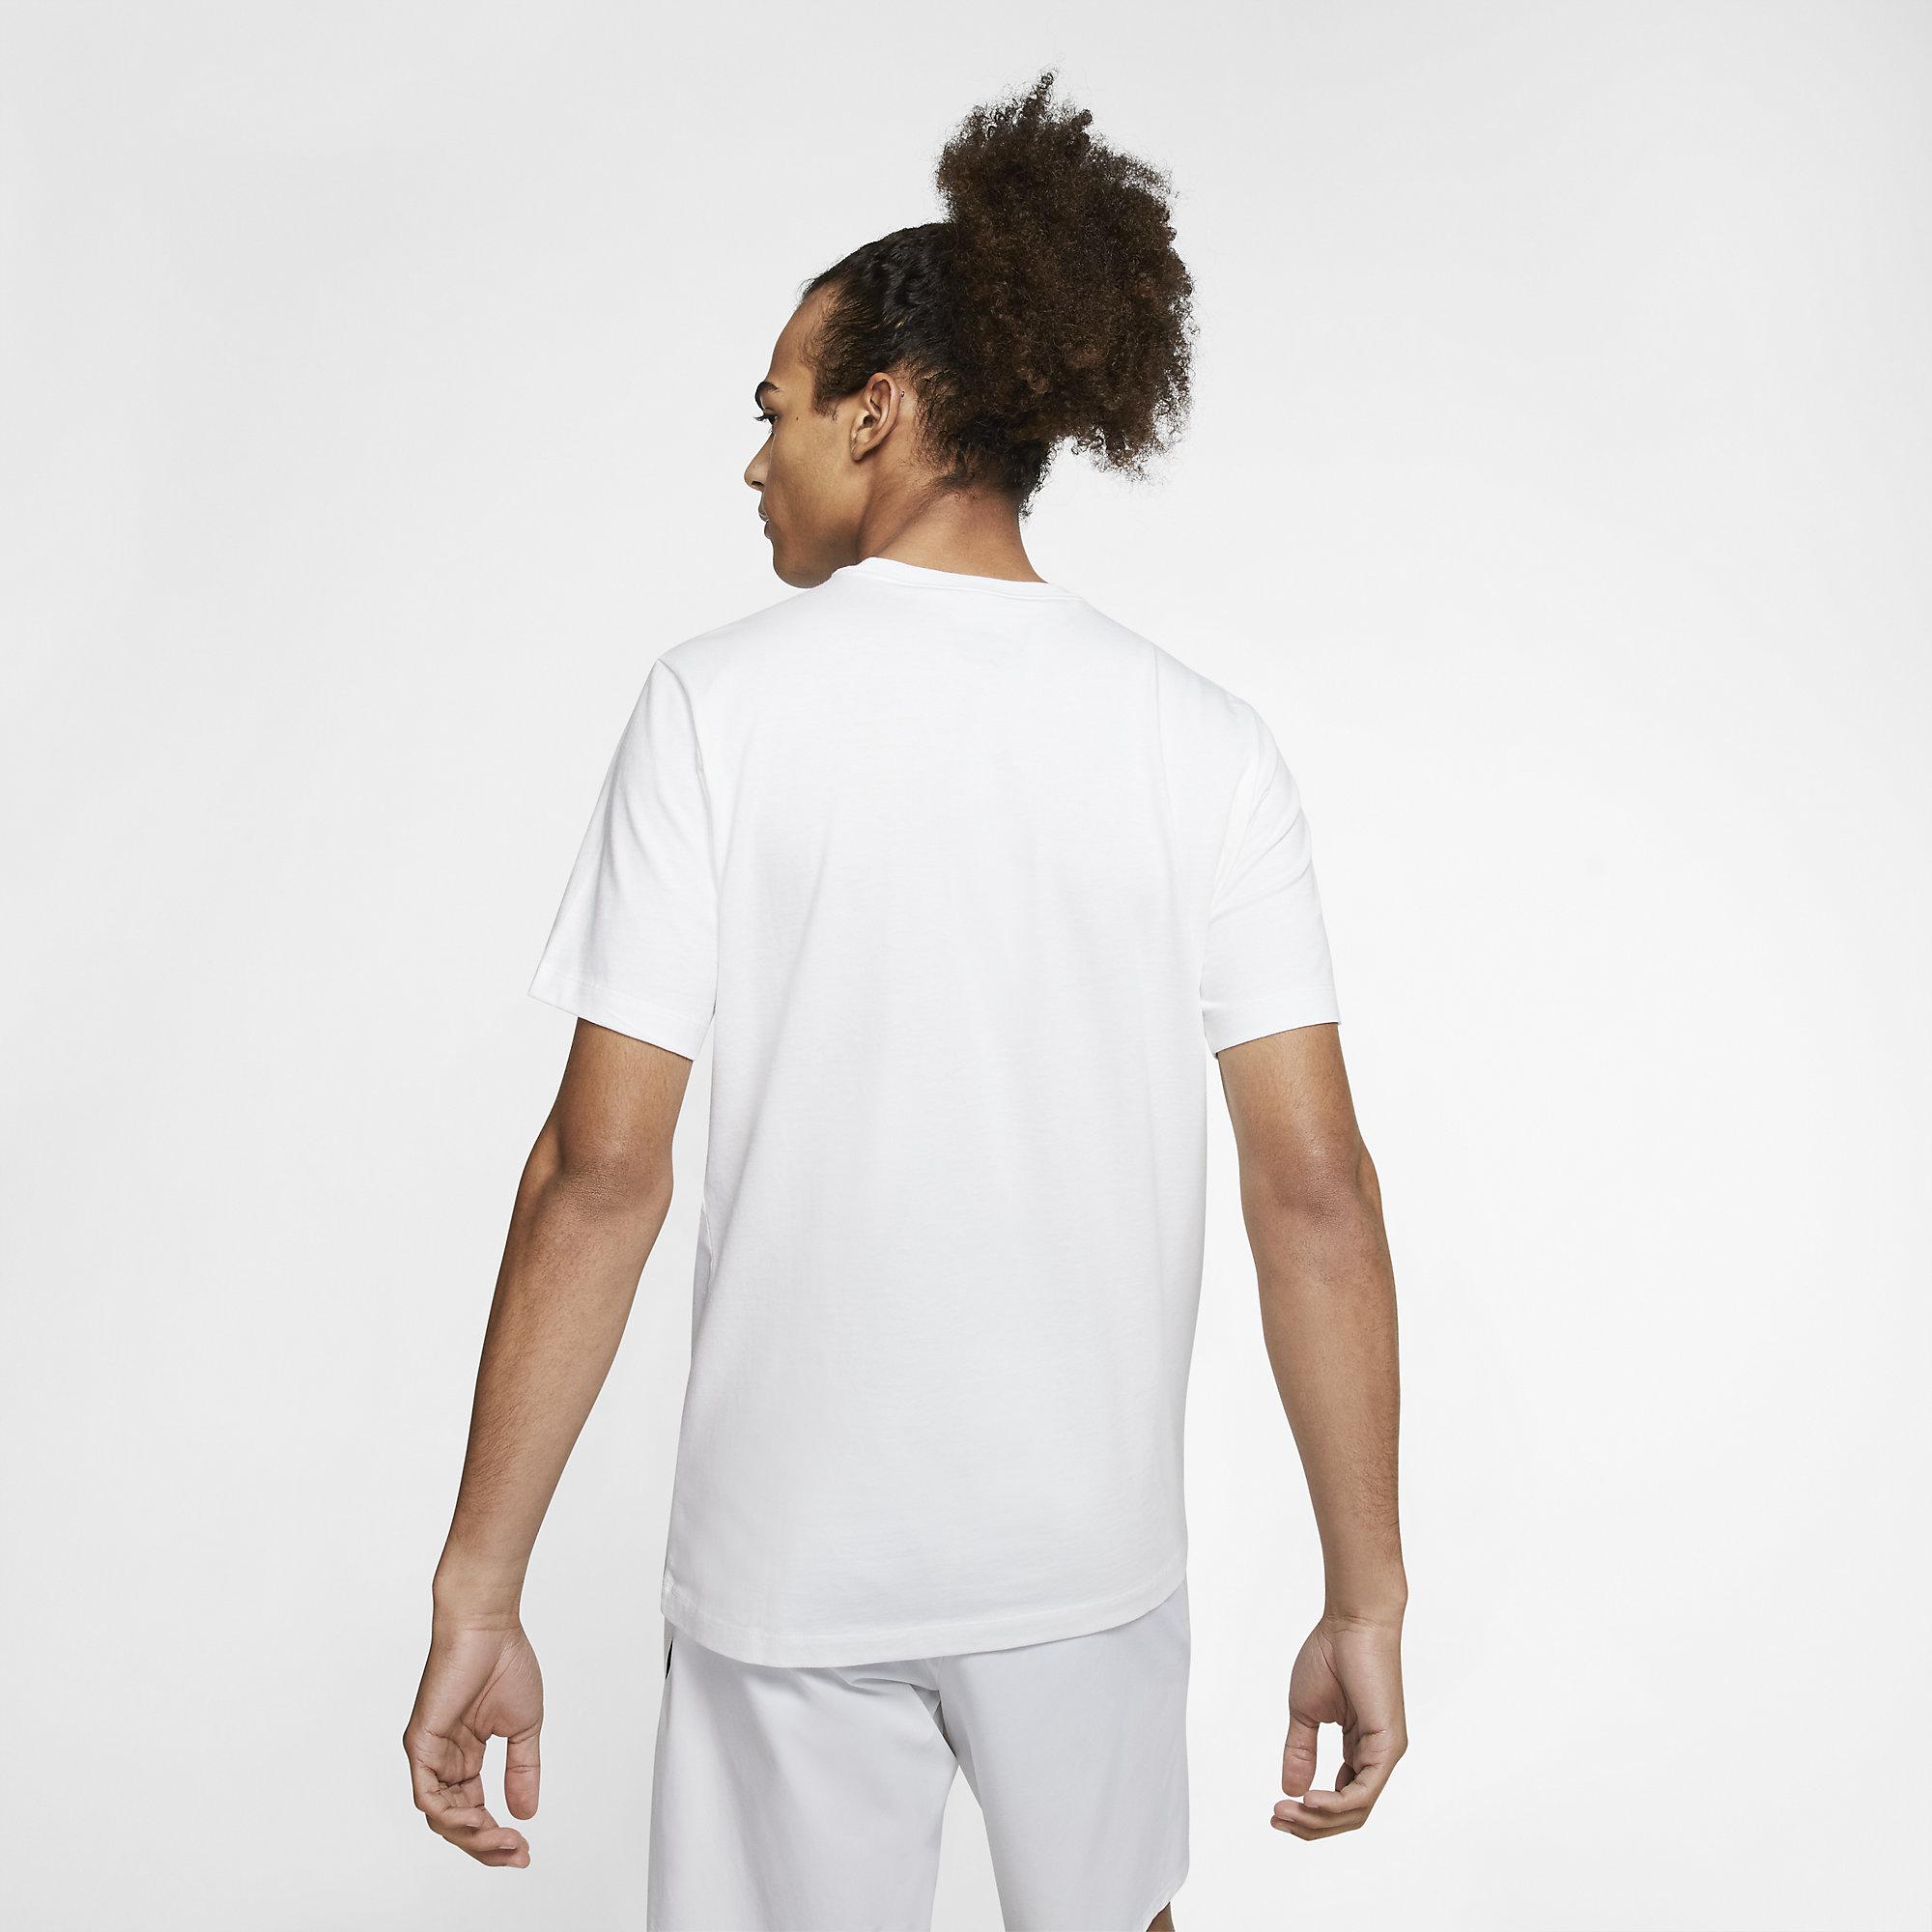 Nike Mens Tennis T-Shirt - White - Tennisnuts.com